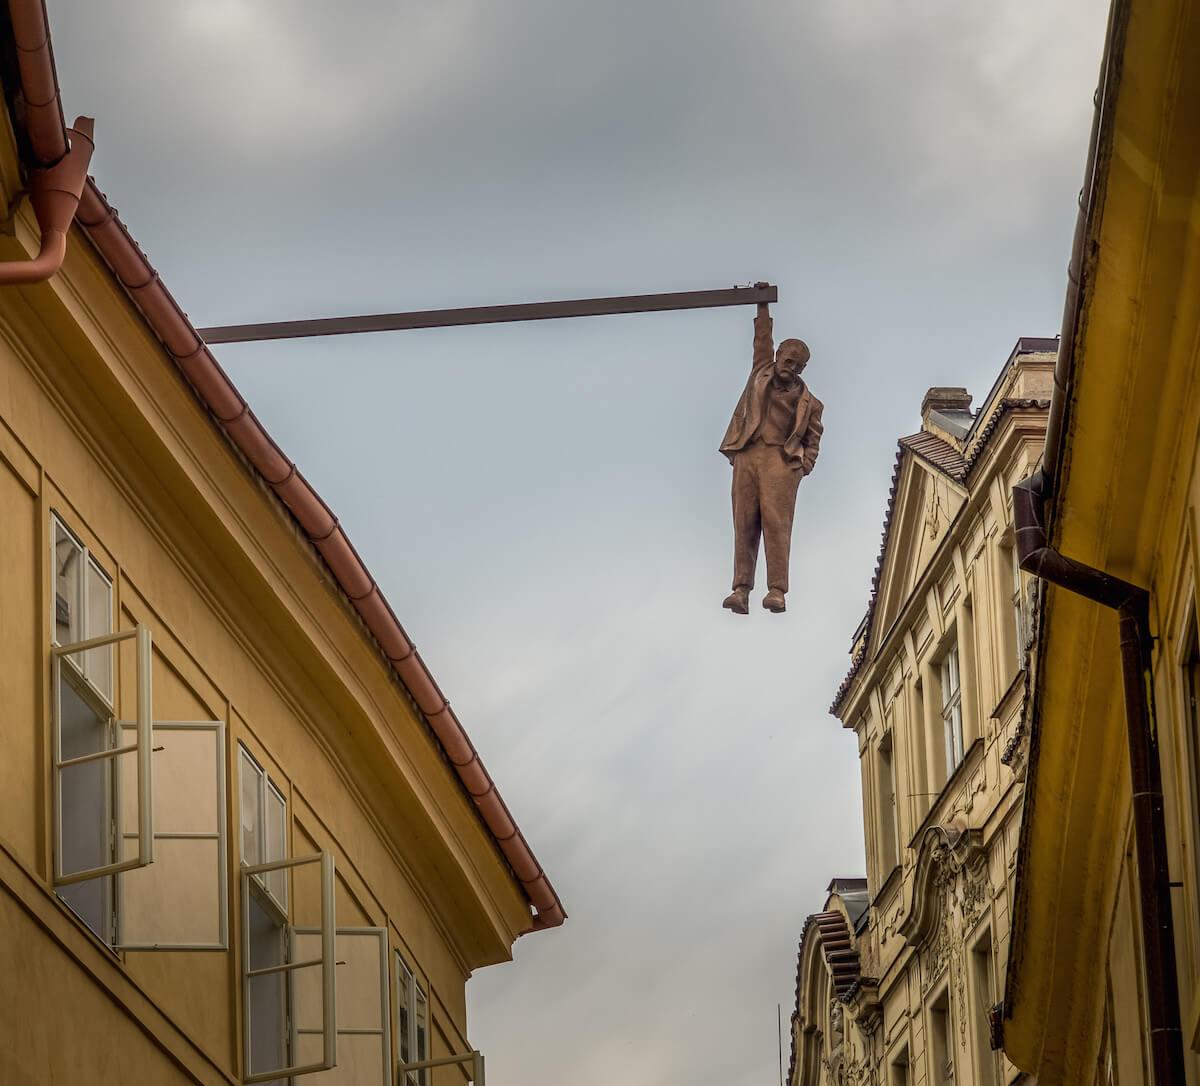 street art in Prague: the hanging man Prague